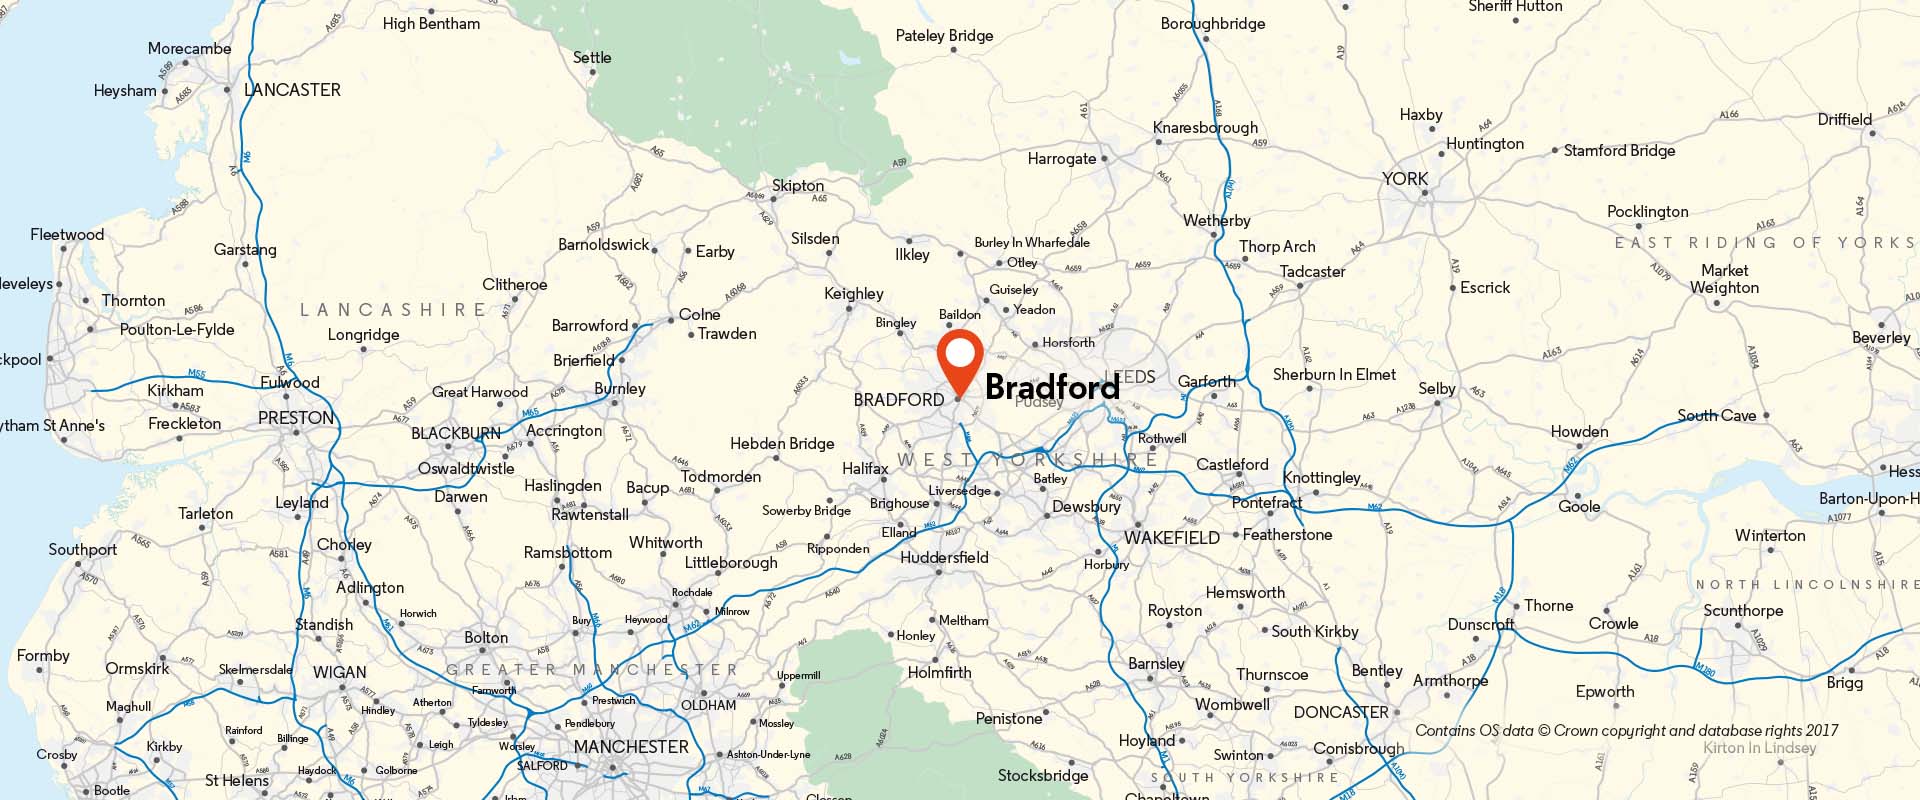 Bradford CoM location